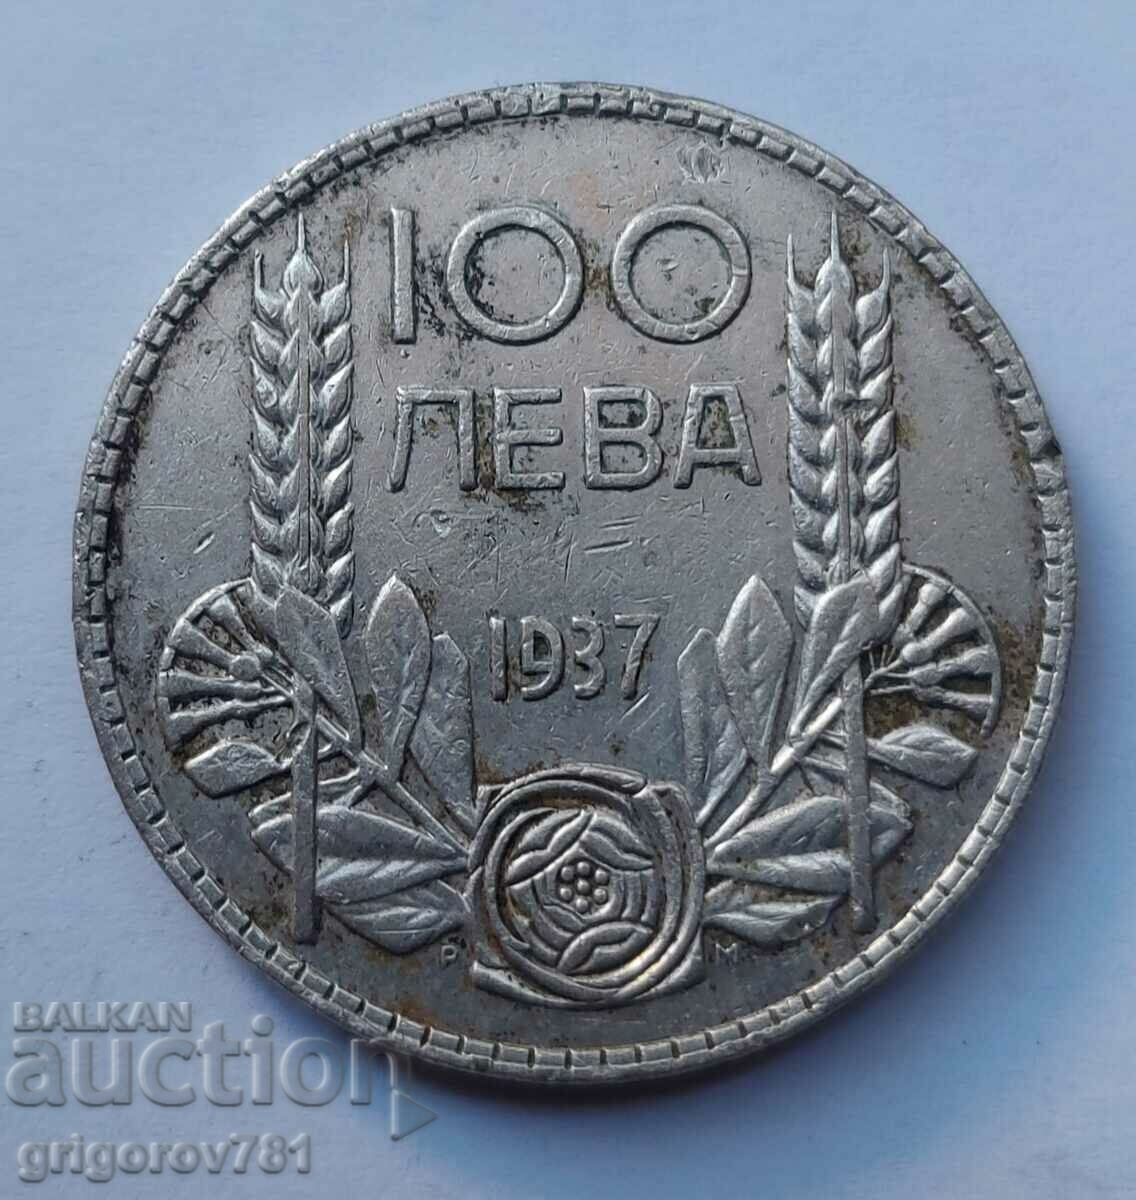 100 leva silver Bulgaria 1937 - silver coin #46